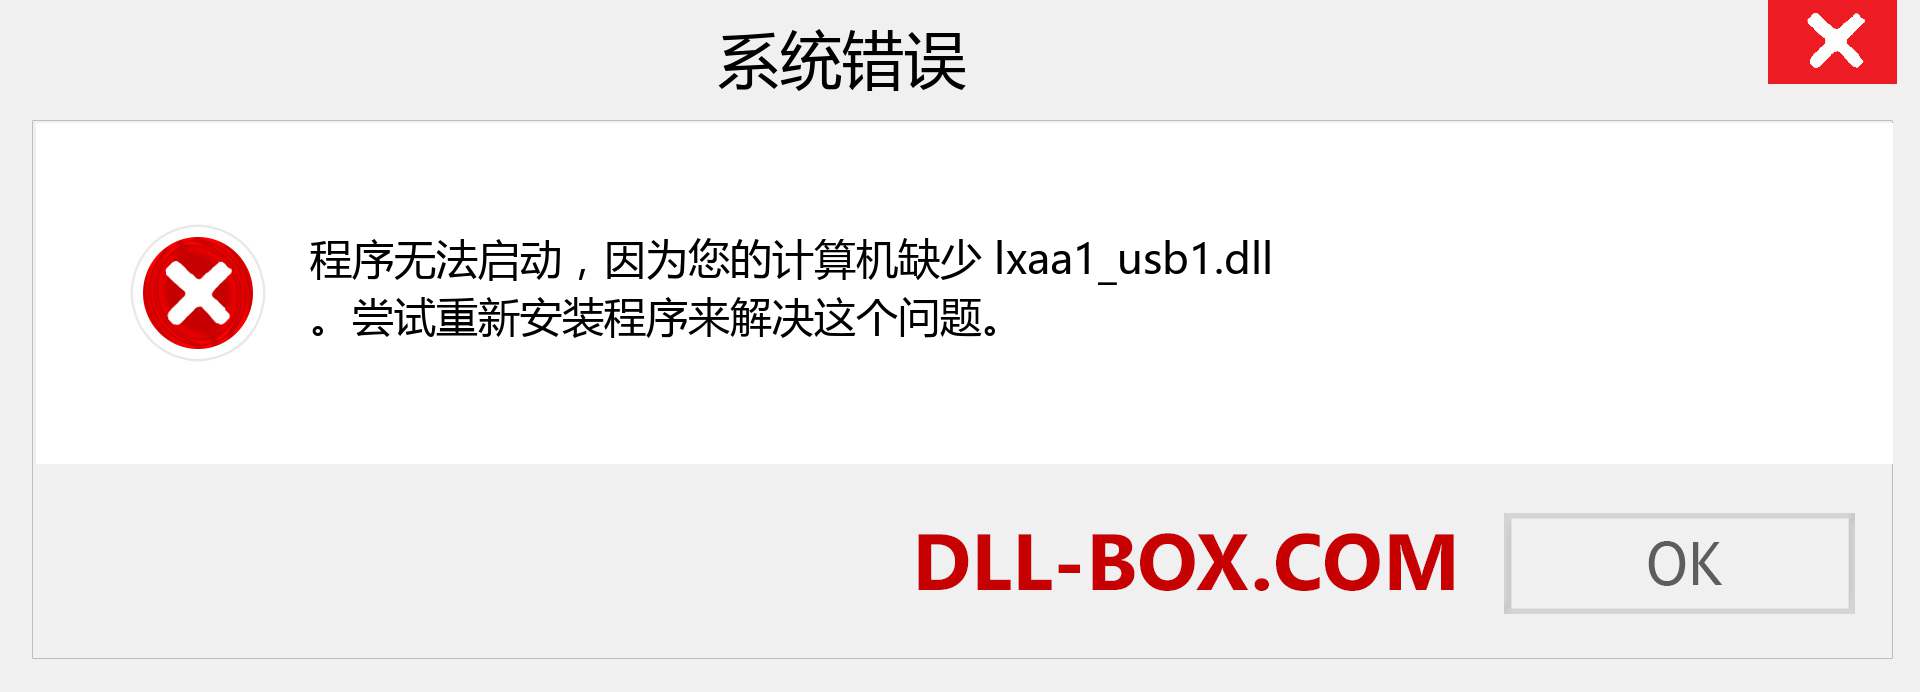 lxaa1_usb1.dll 文件丢失？。 适用于 Windows 7、8、10 的下载 - 修复 Windows、照片、图像上的 lxaa1_usb1 dll 丢失错误